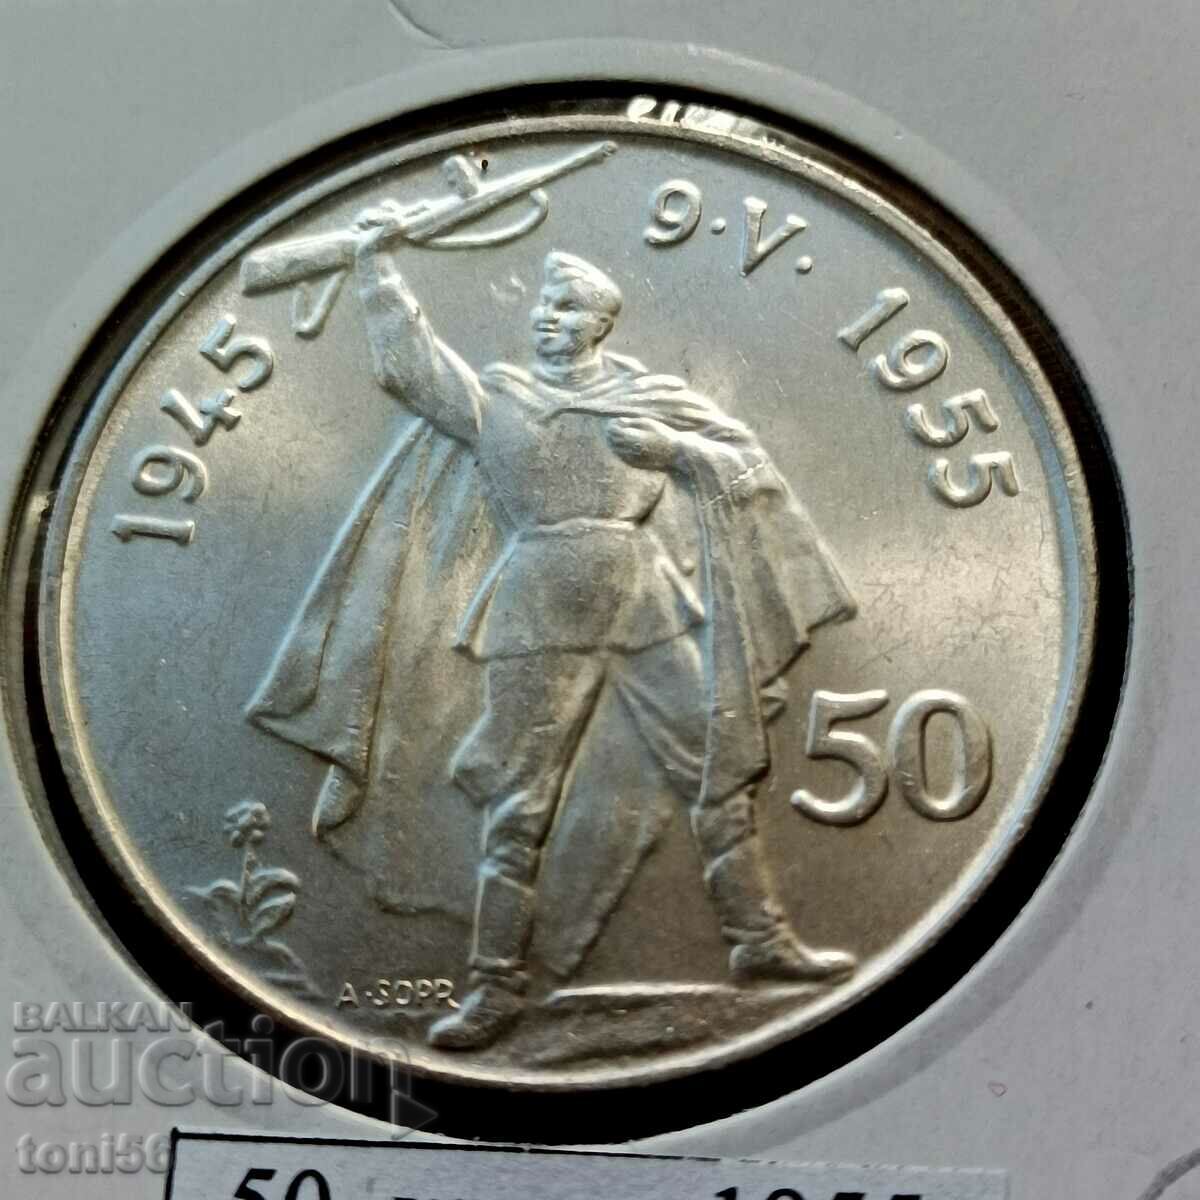 Czechoslovakia 50 kroner 1955 UNC - Silver